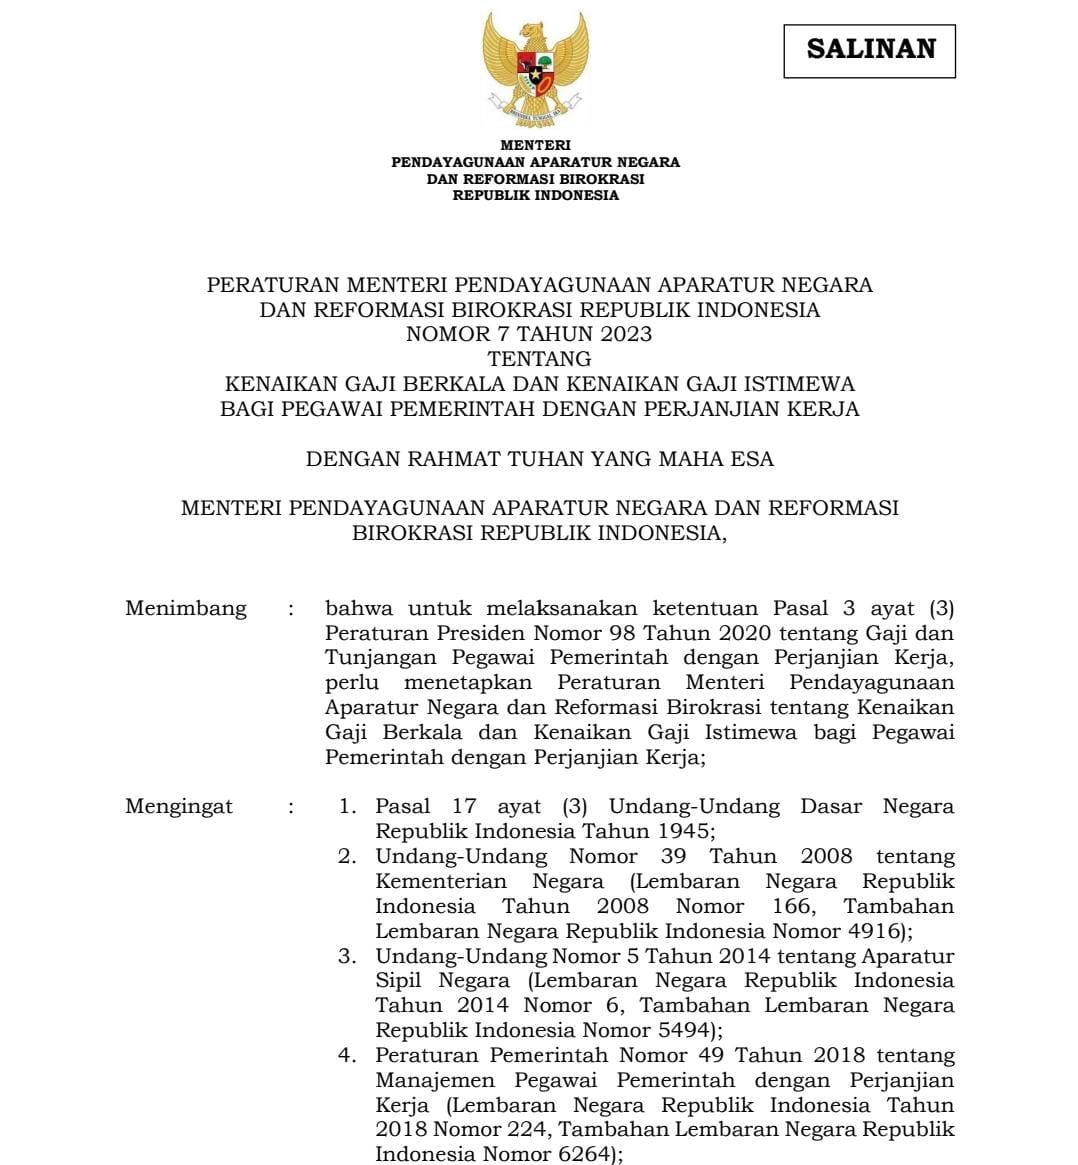 Peraturan Menteri Pendayagunaan Aparatur Negara dan Reformasi Birokrasi Republik Indonesia Nomor 7 Tahun 2023